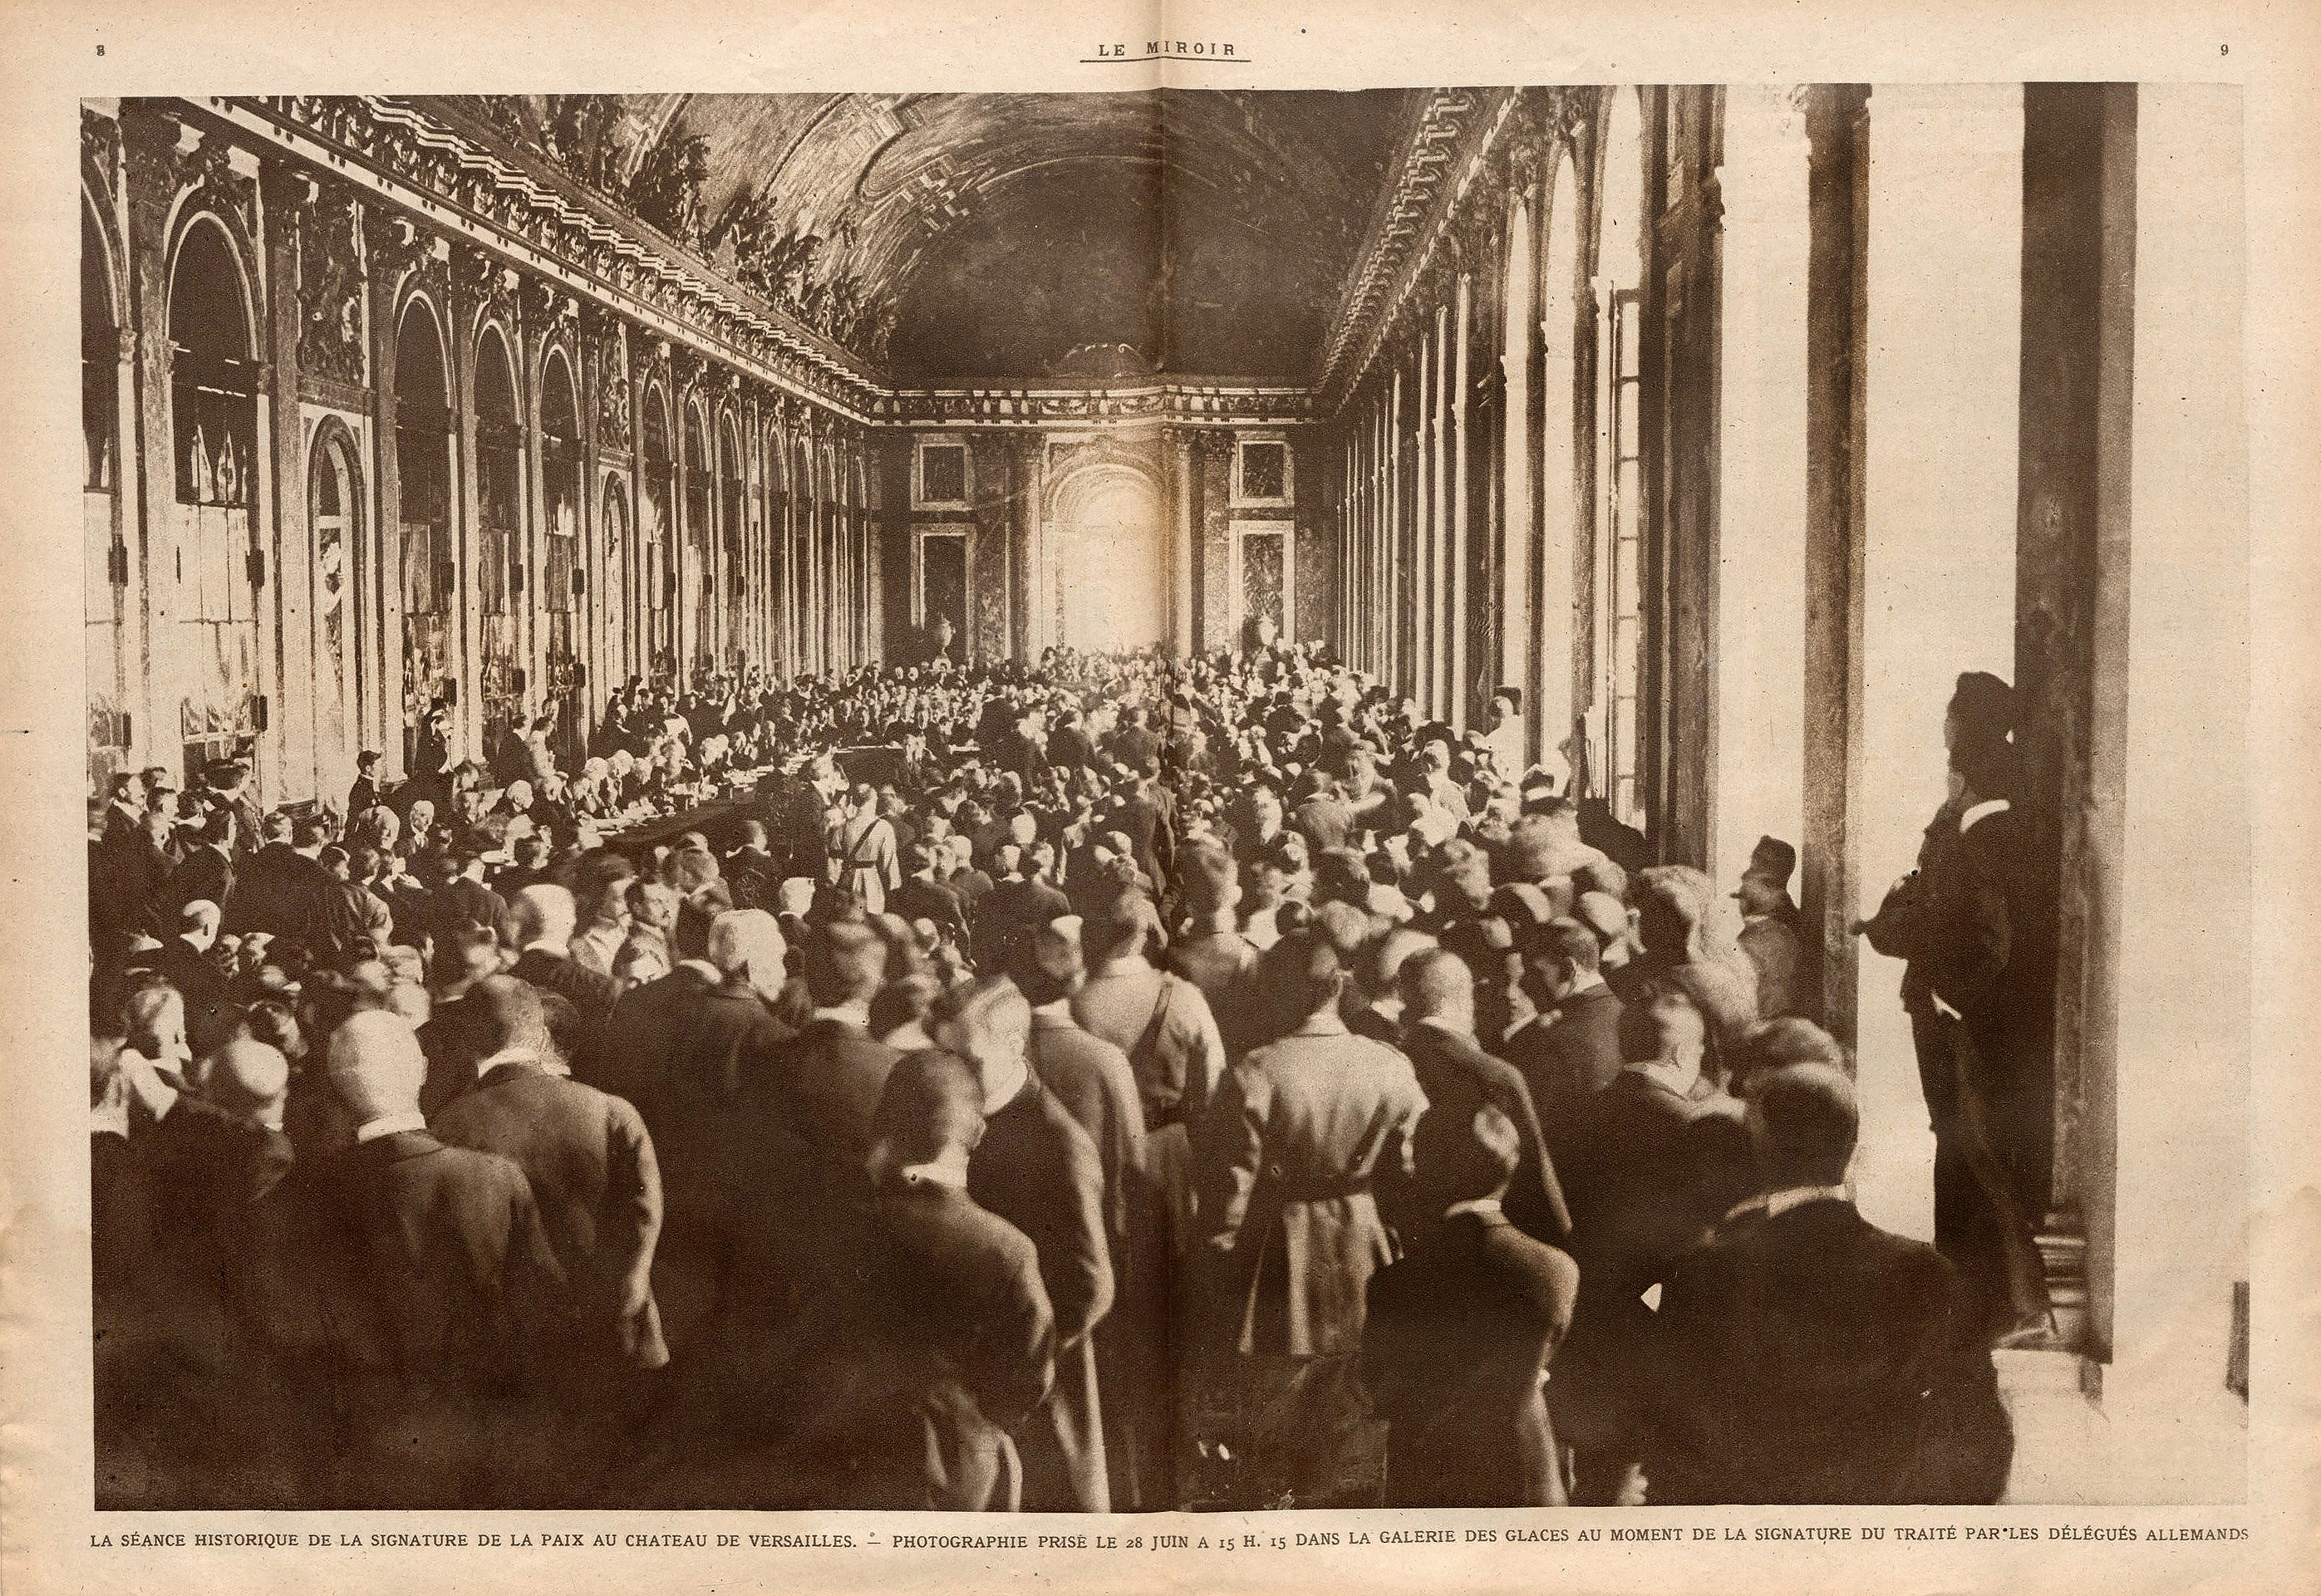 Le Miroir 9e année numéro 294 dimanche 13 juillet 1919 Signature du traité de Versailles le 28 juin 1919_R